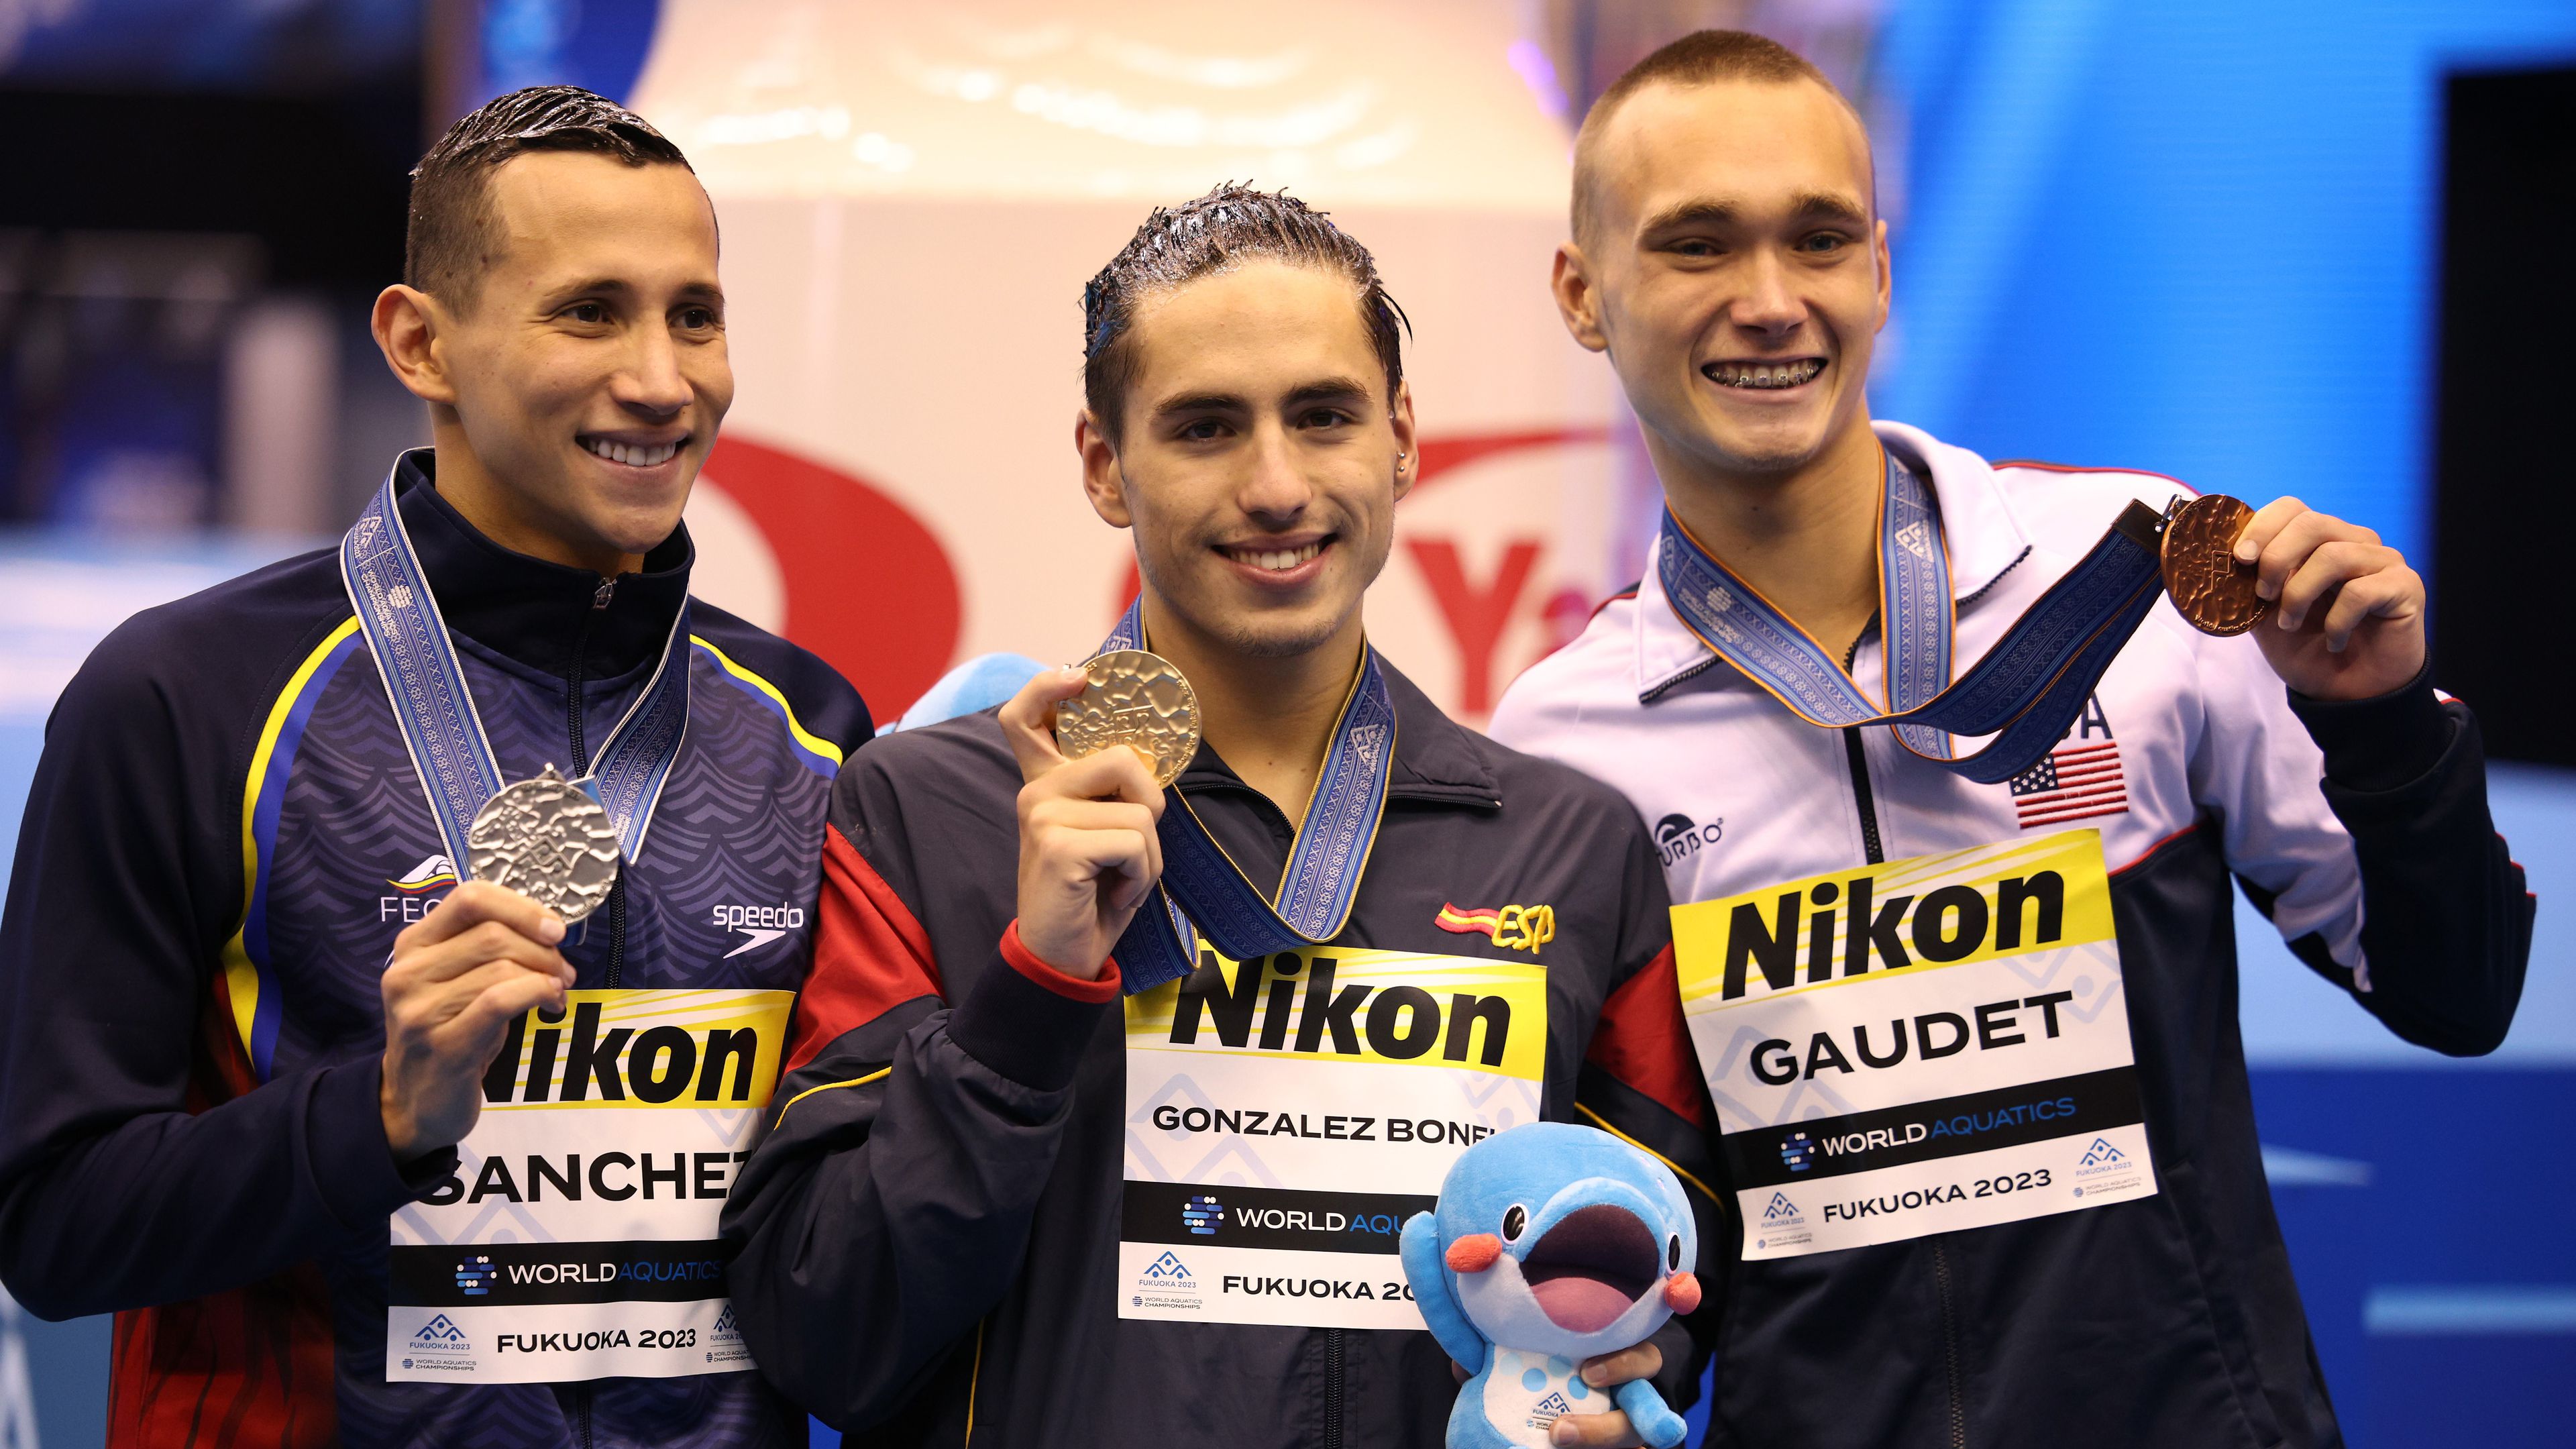 Dennis González Boenu (középen) a férfi szabadprogram aranyérmese szinkronúszásban